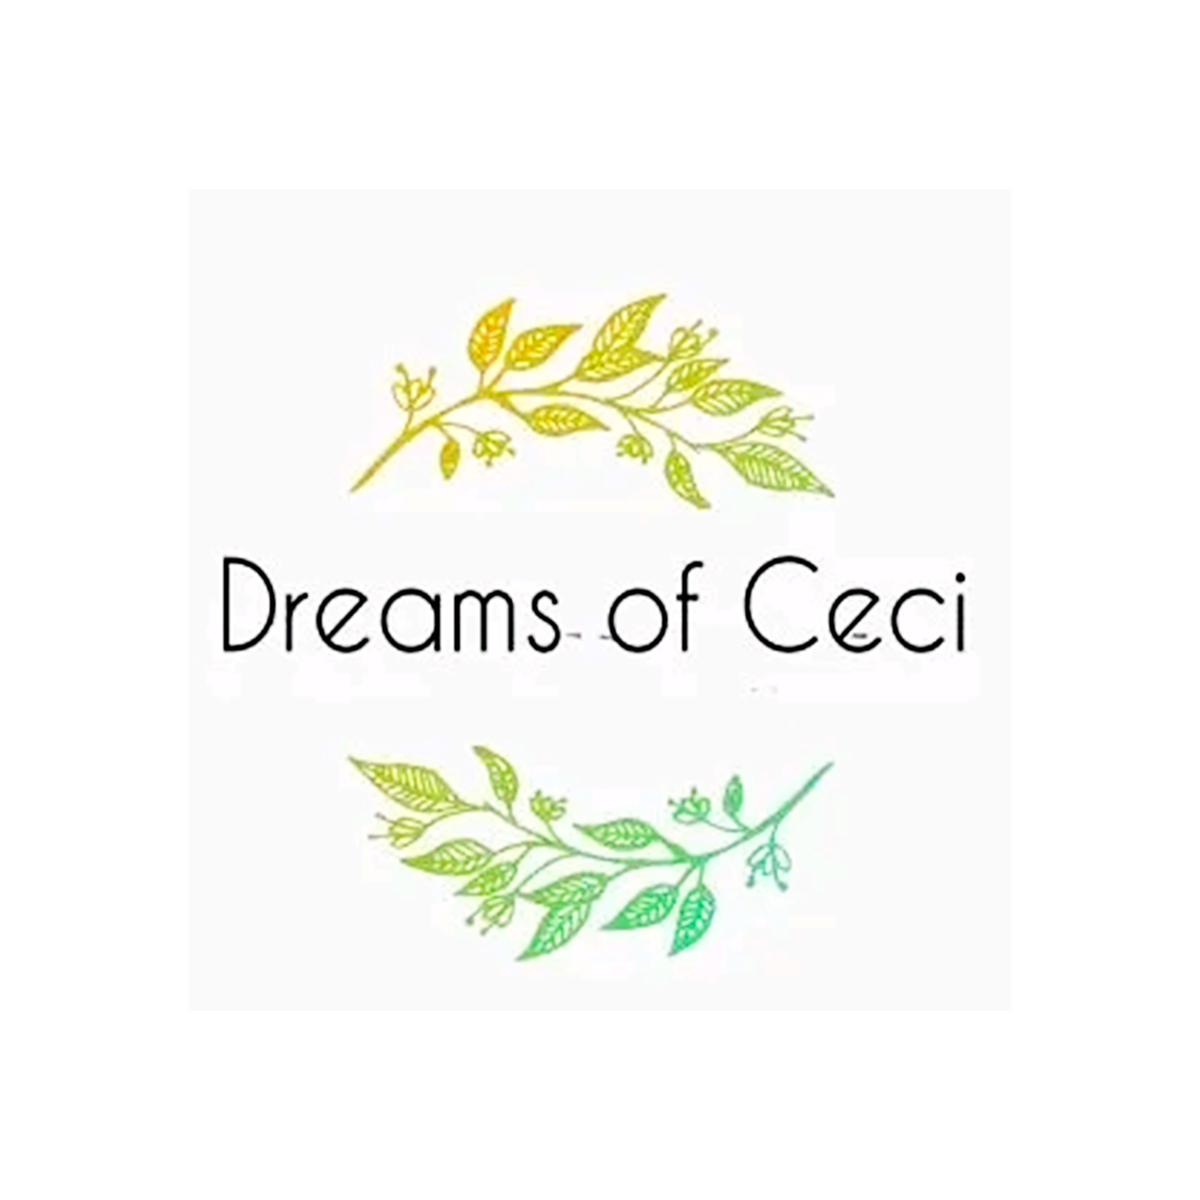 DREAMS OF CECI